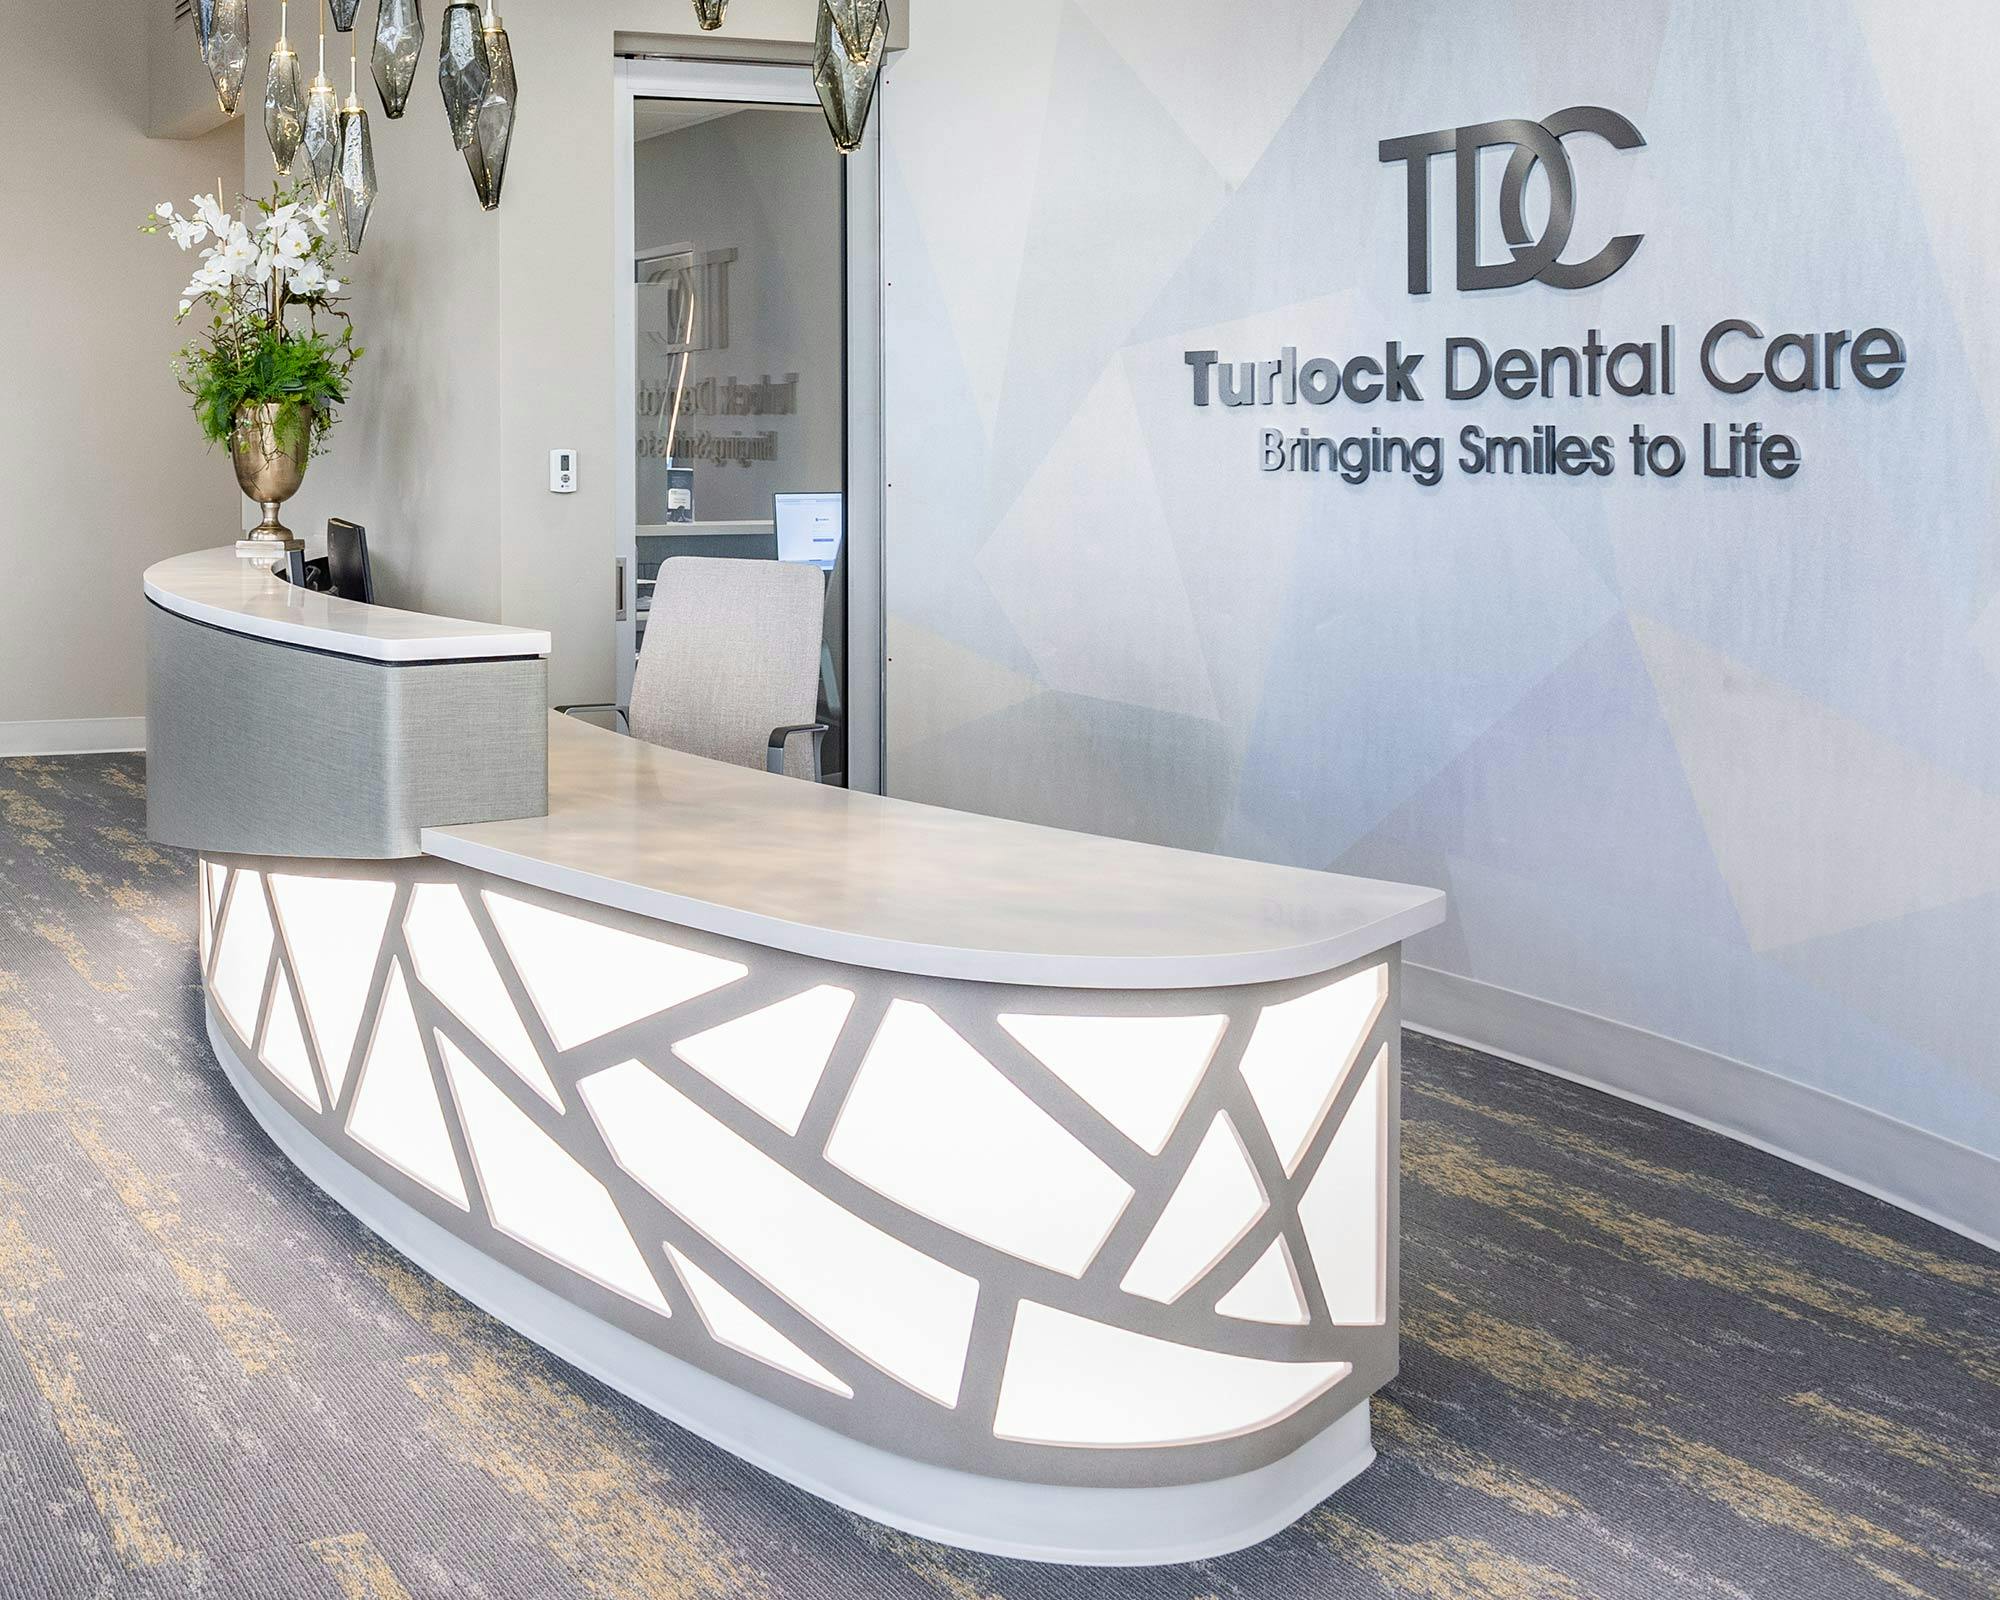 Imagem número 32 da actual secção de Award-winning Turlock Dental Care remodel featuring Silestone da Cosentino Portugal